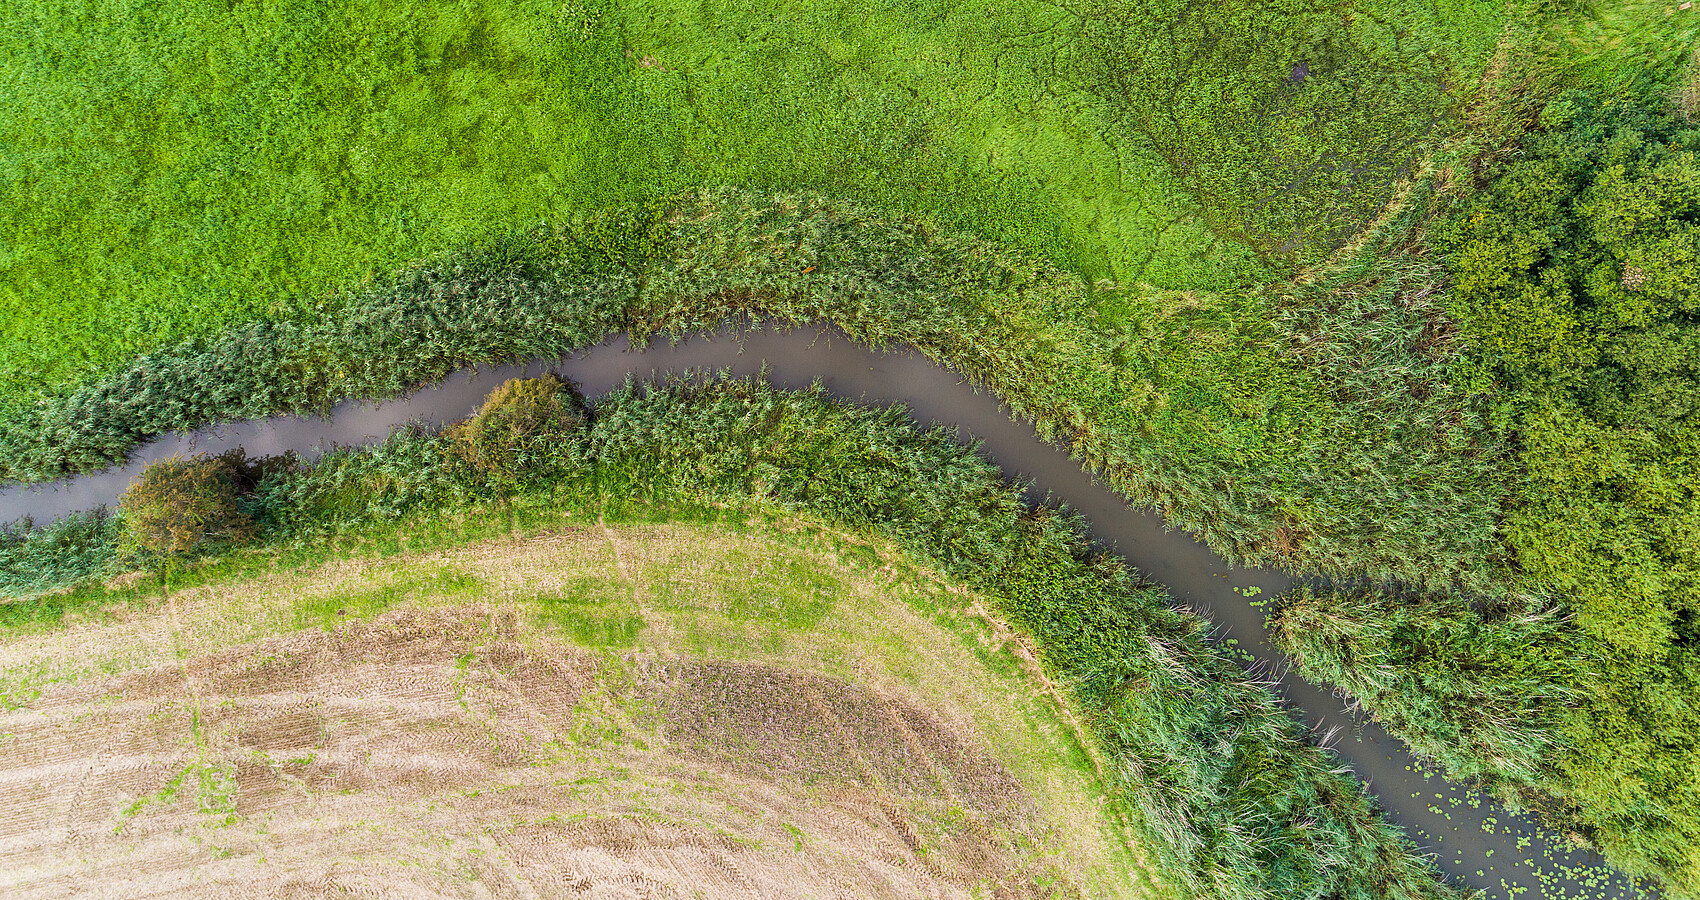 Drohnenaufnahme eines Gewässerverlaufs. Man sieht aus der Vogelperspektive einen Flußverlauf zwischen einem abgeernteten Feld und grüen Wiesen